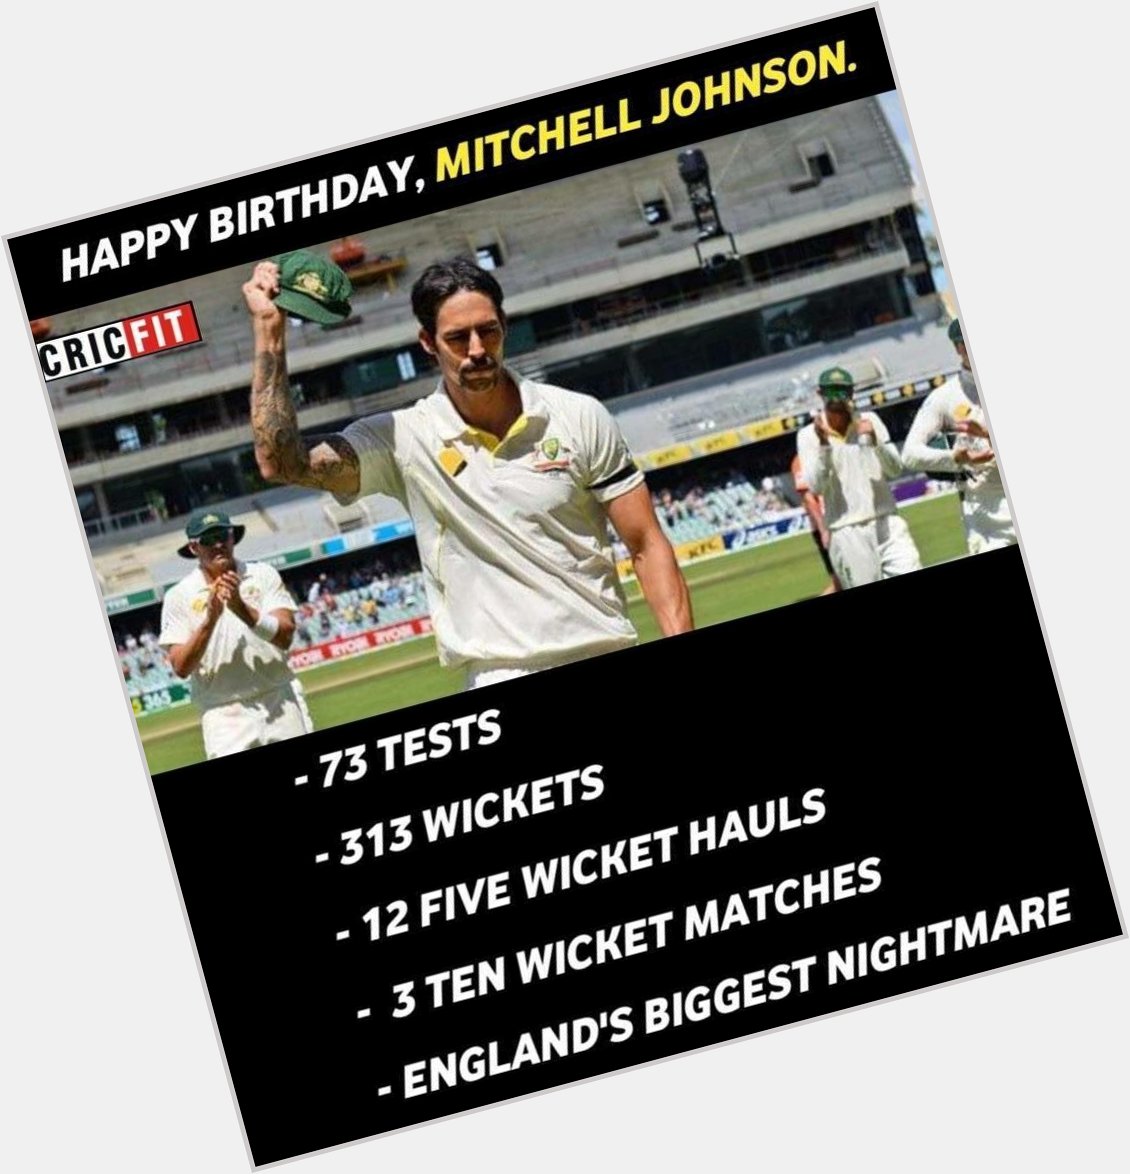 Happy birthday Mitchell Johnson! 